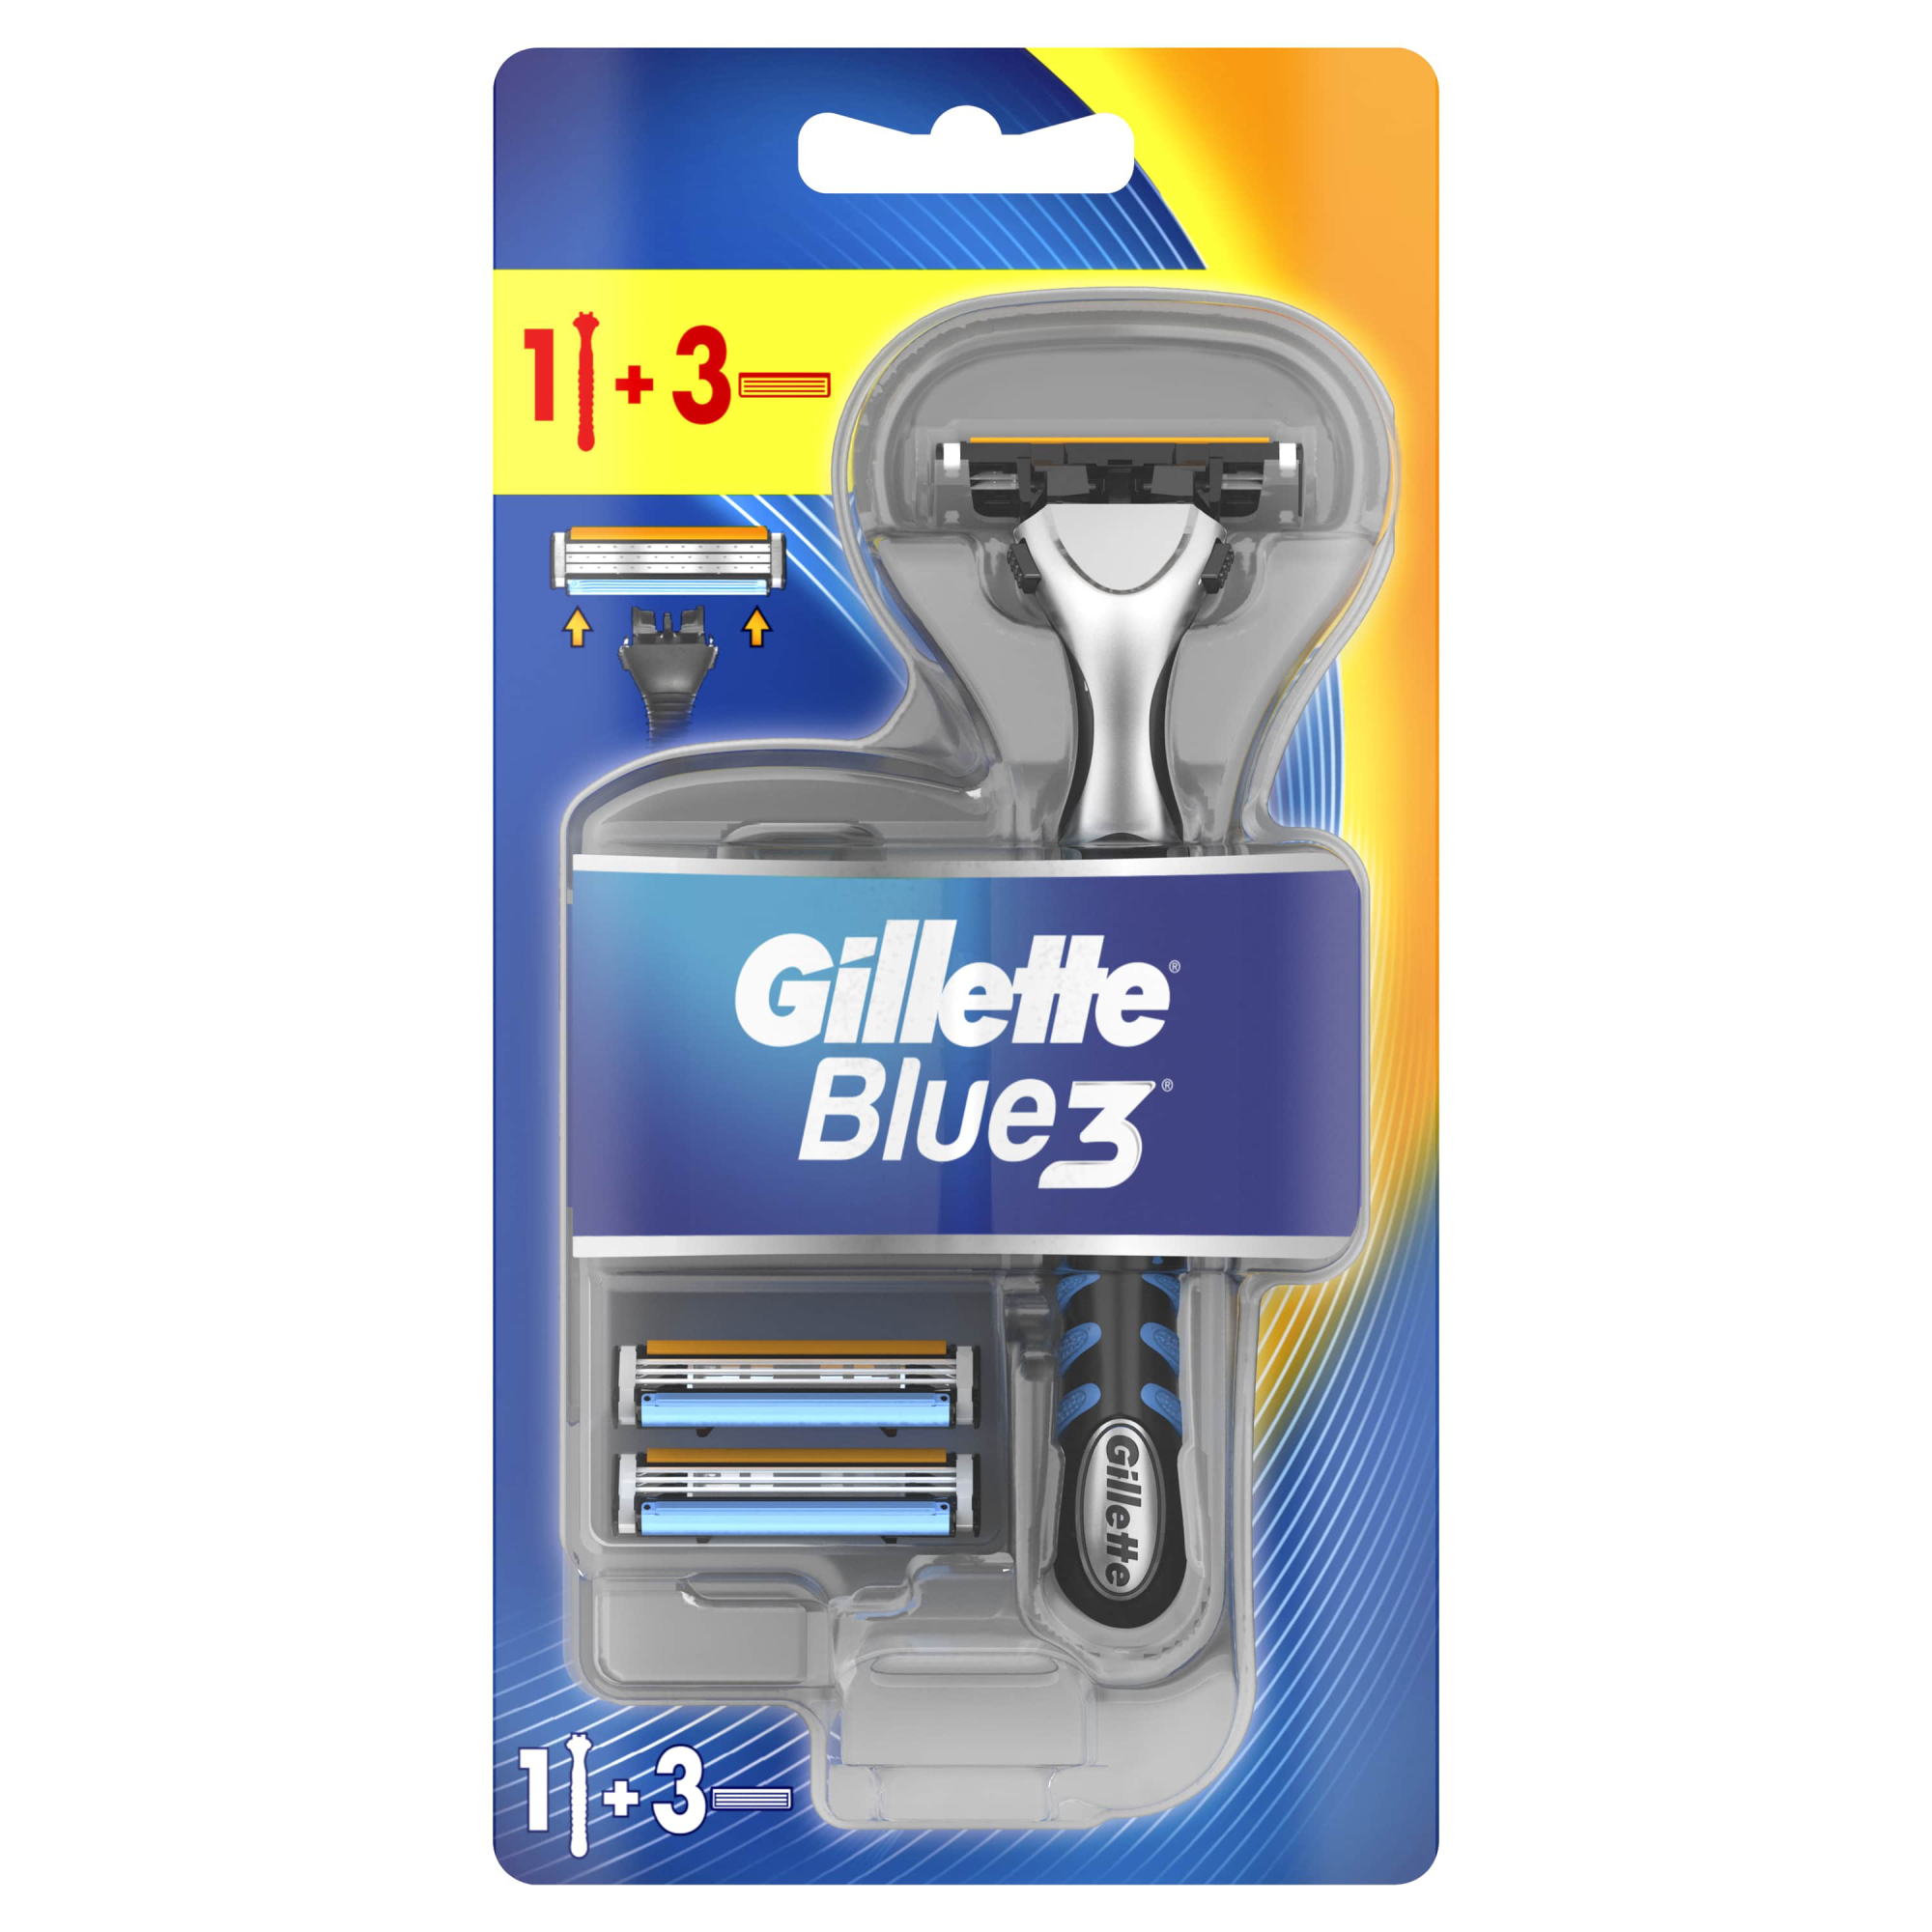 Мужская бритва Gillette Blue3, 3 кассеты, с 3 лезвиями, плавающая головка бритва мужская deonica безопасная со сменной кассетой 5 лезвий